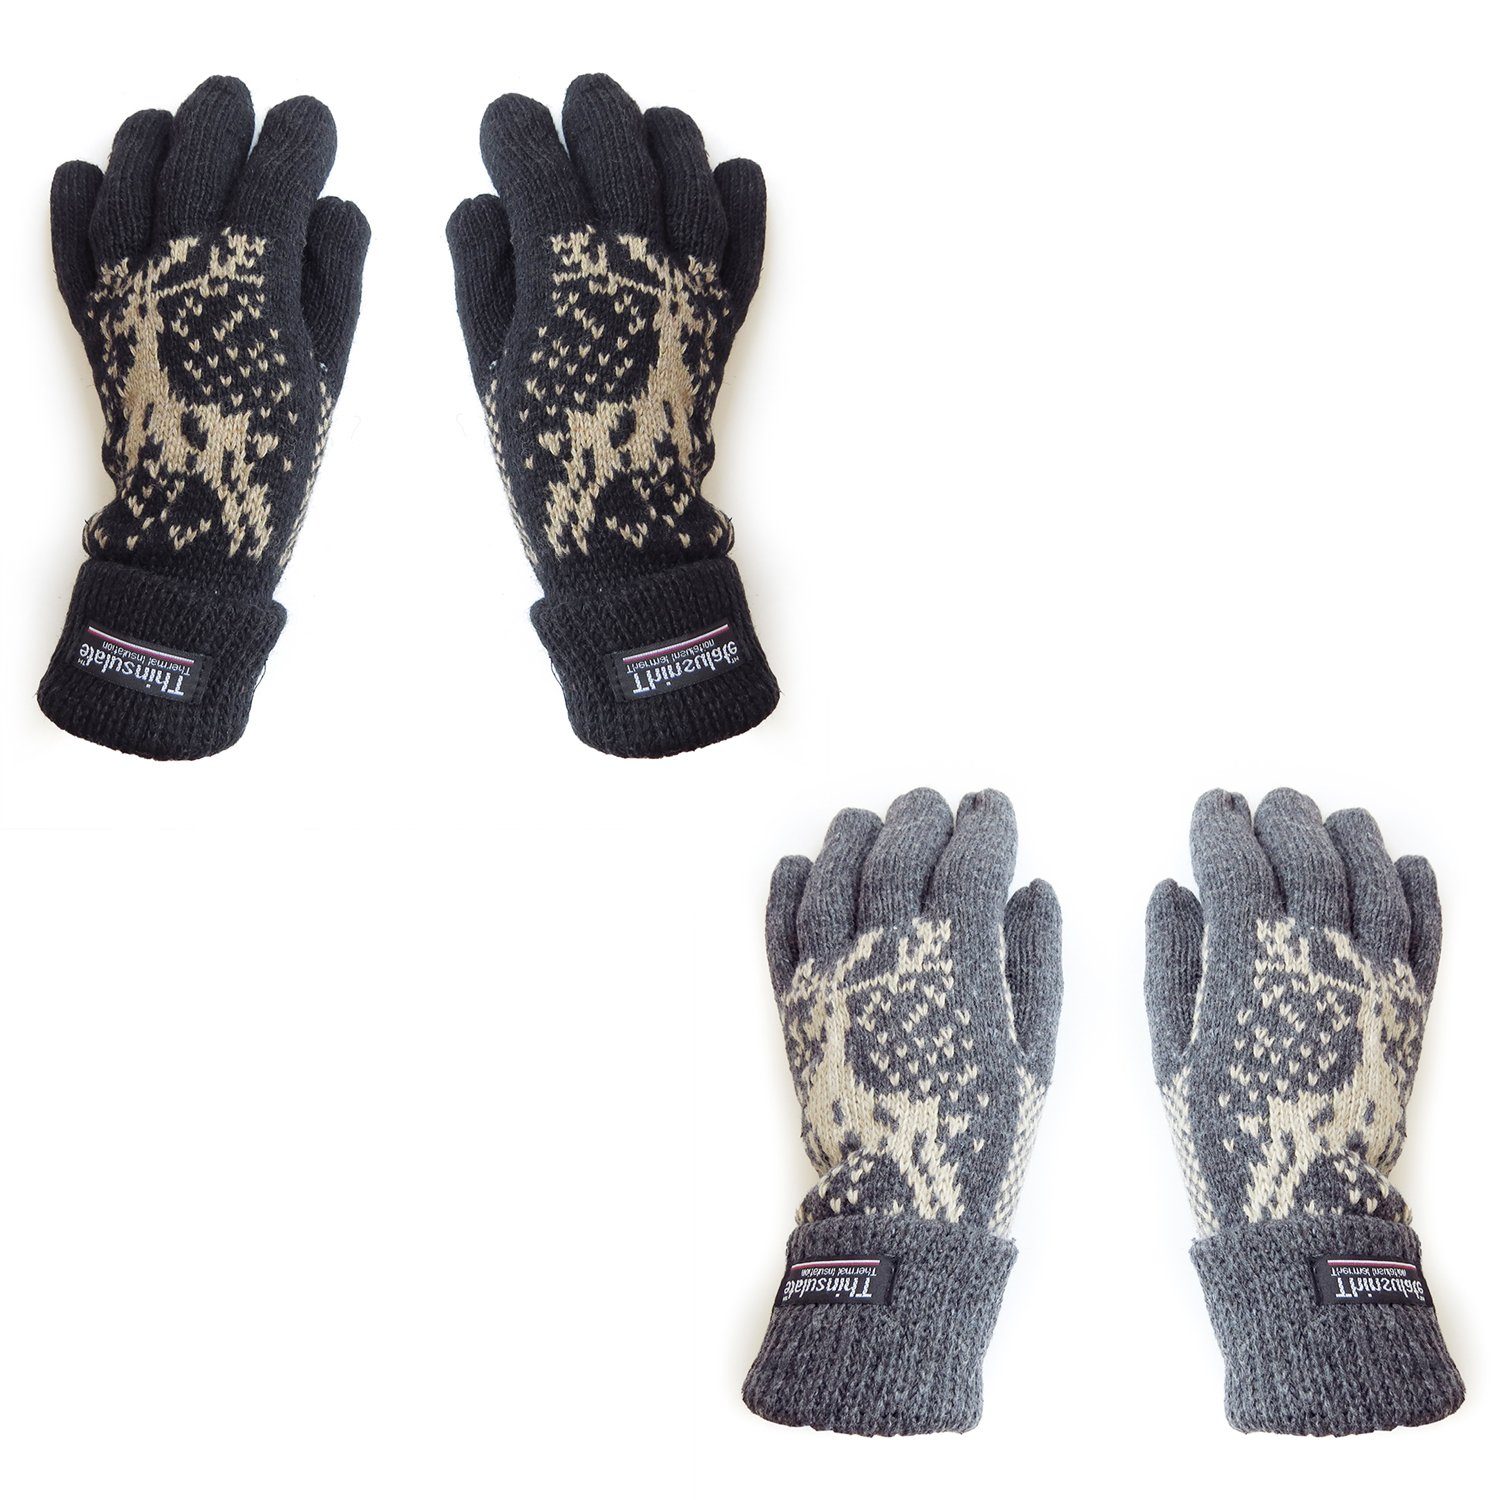 Sonia Originelli Strickhandschuhe Strickhandschuhe anthrazit können abweichen Farben Unisex Wolle Fleece Winter Elch Umschlag Finger